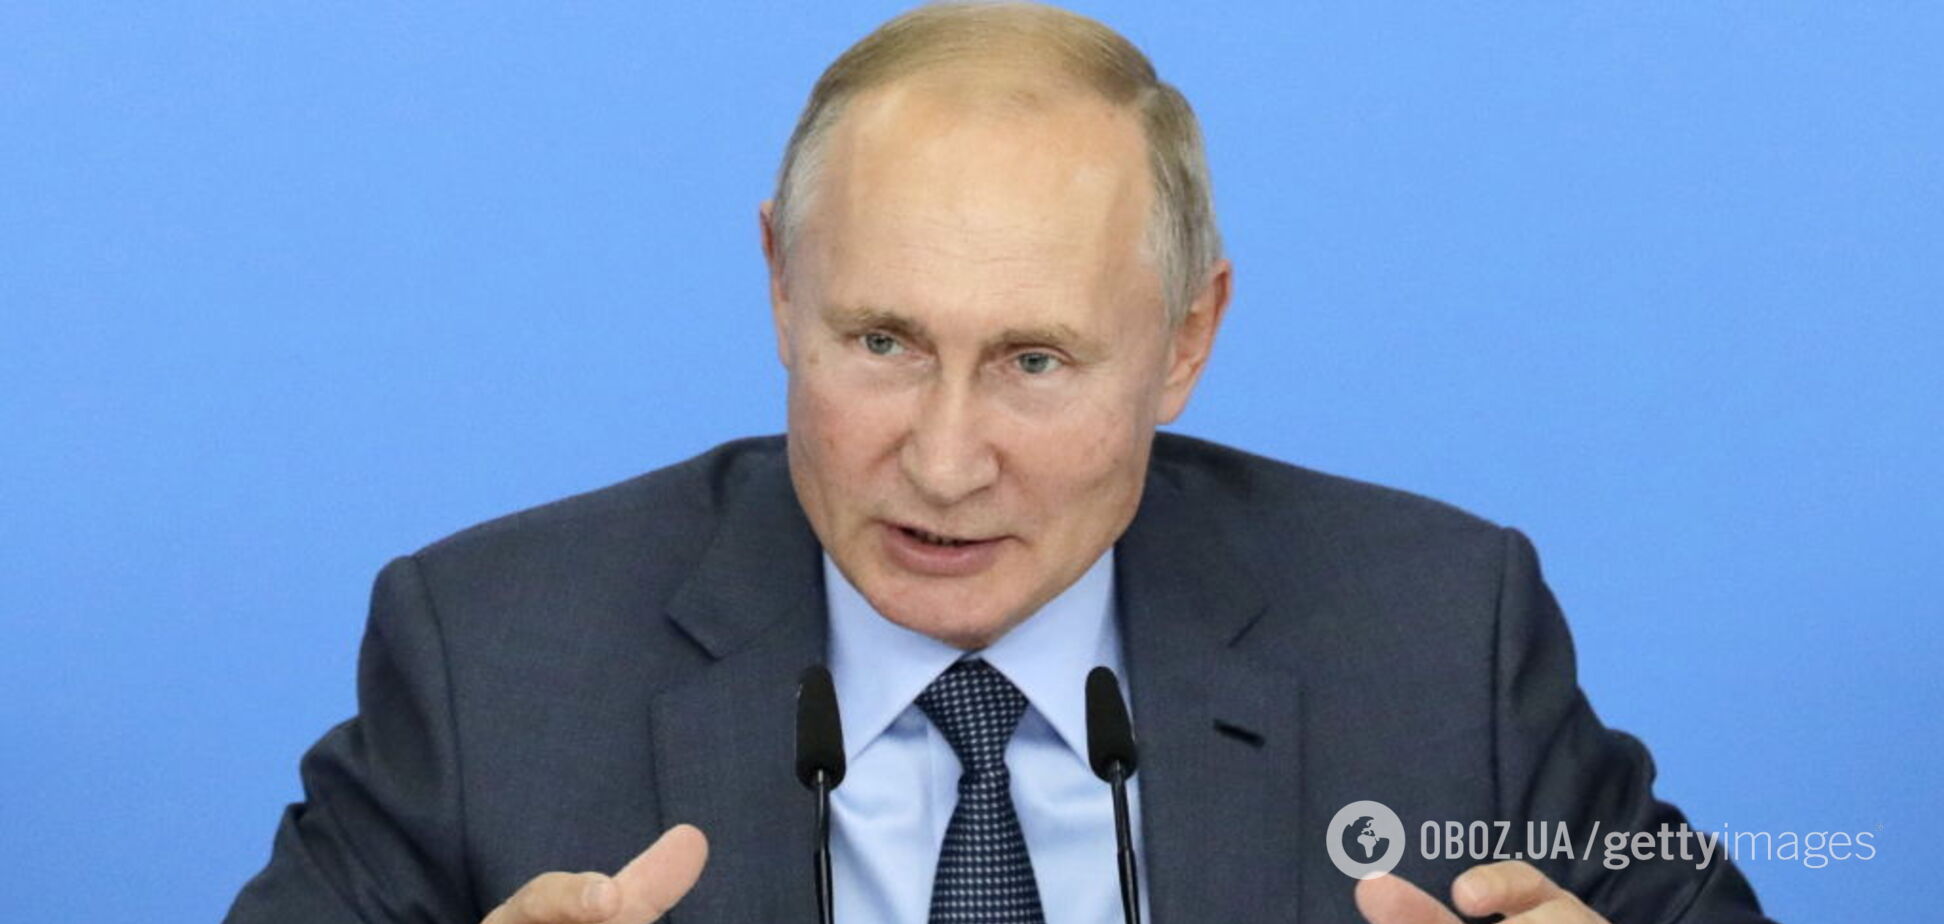 'Став ближчим до вічного пекла': як у мережі вітали Путіна з Днем народження